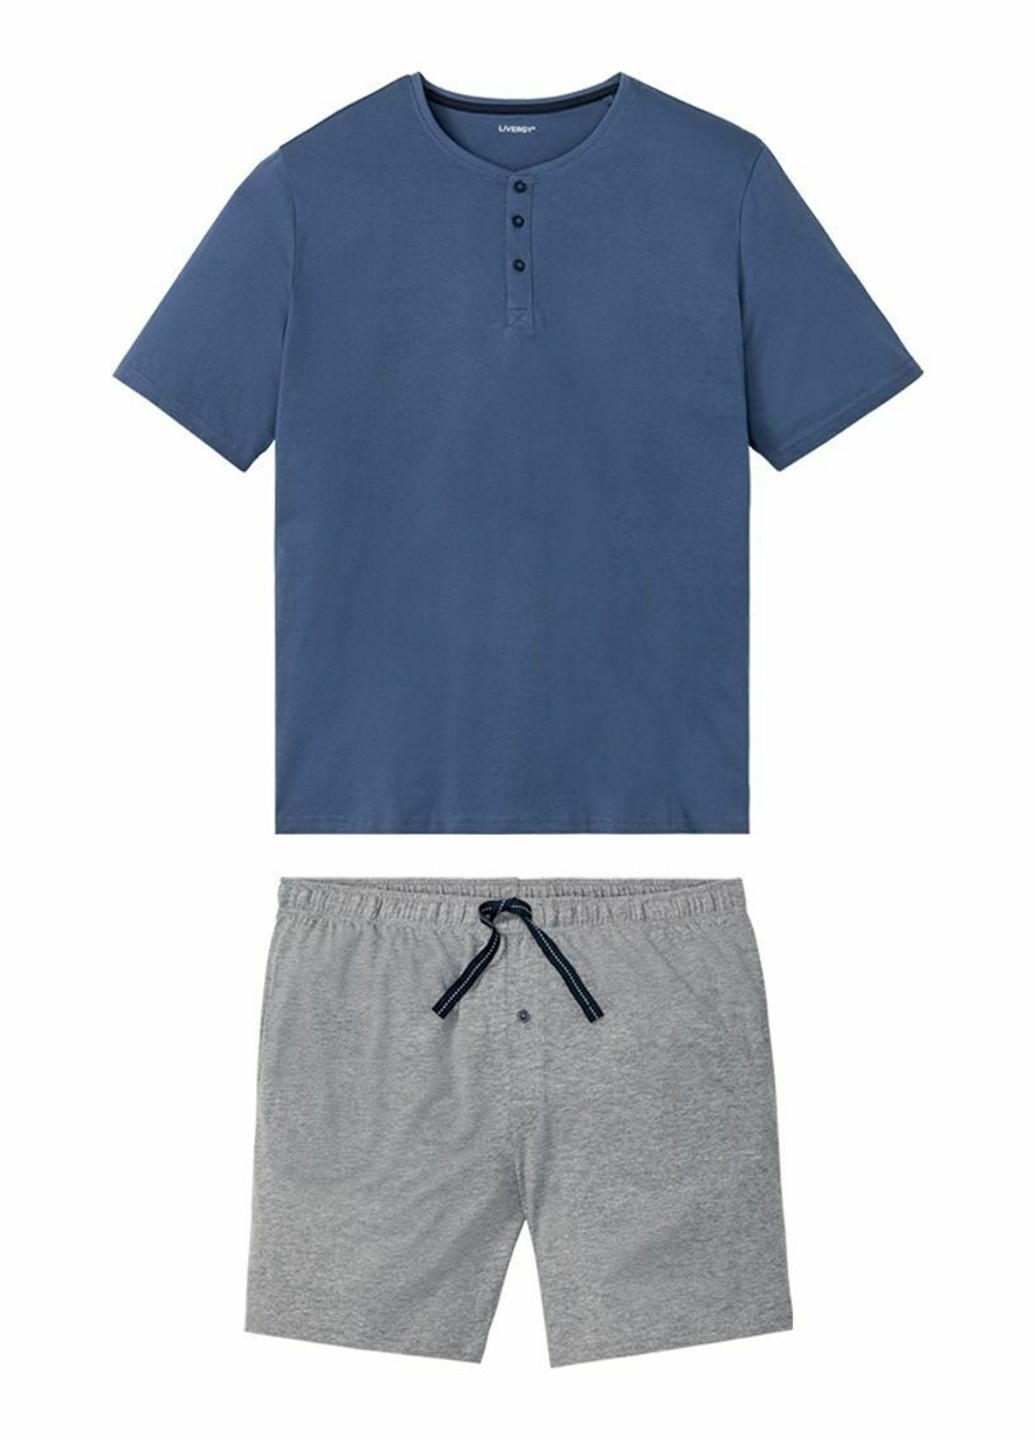 Пижама (футболка, шорты) Livergy футболка + шорты однотонная комбинированная домашняя трикотаж, хлопок